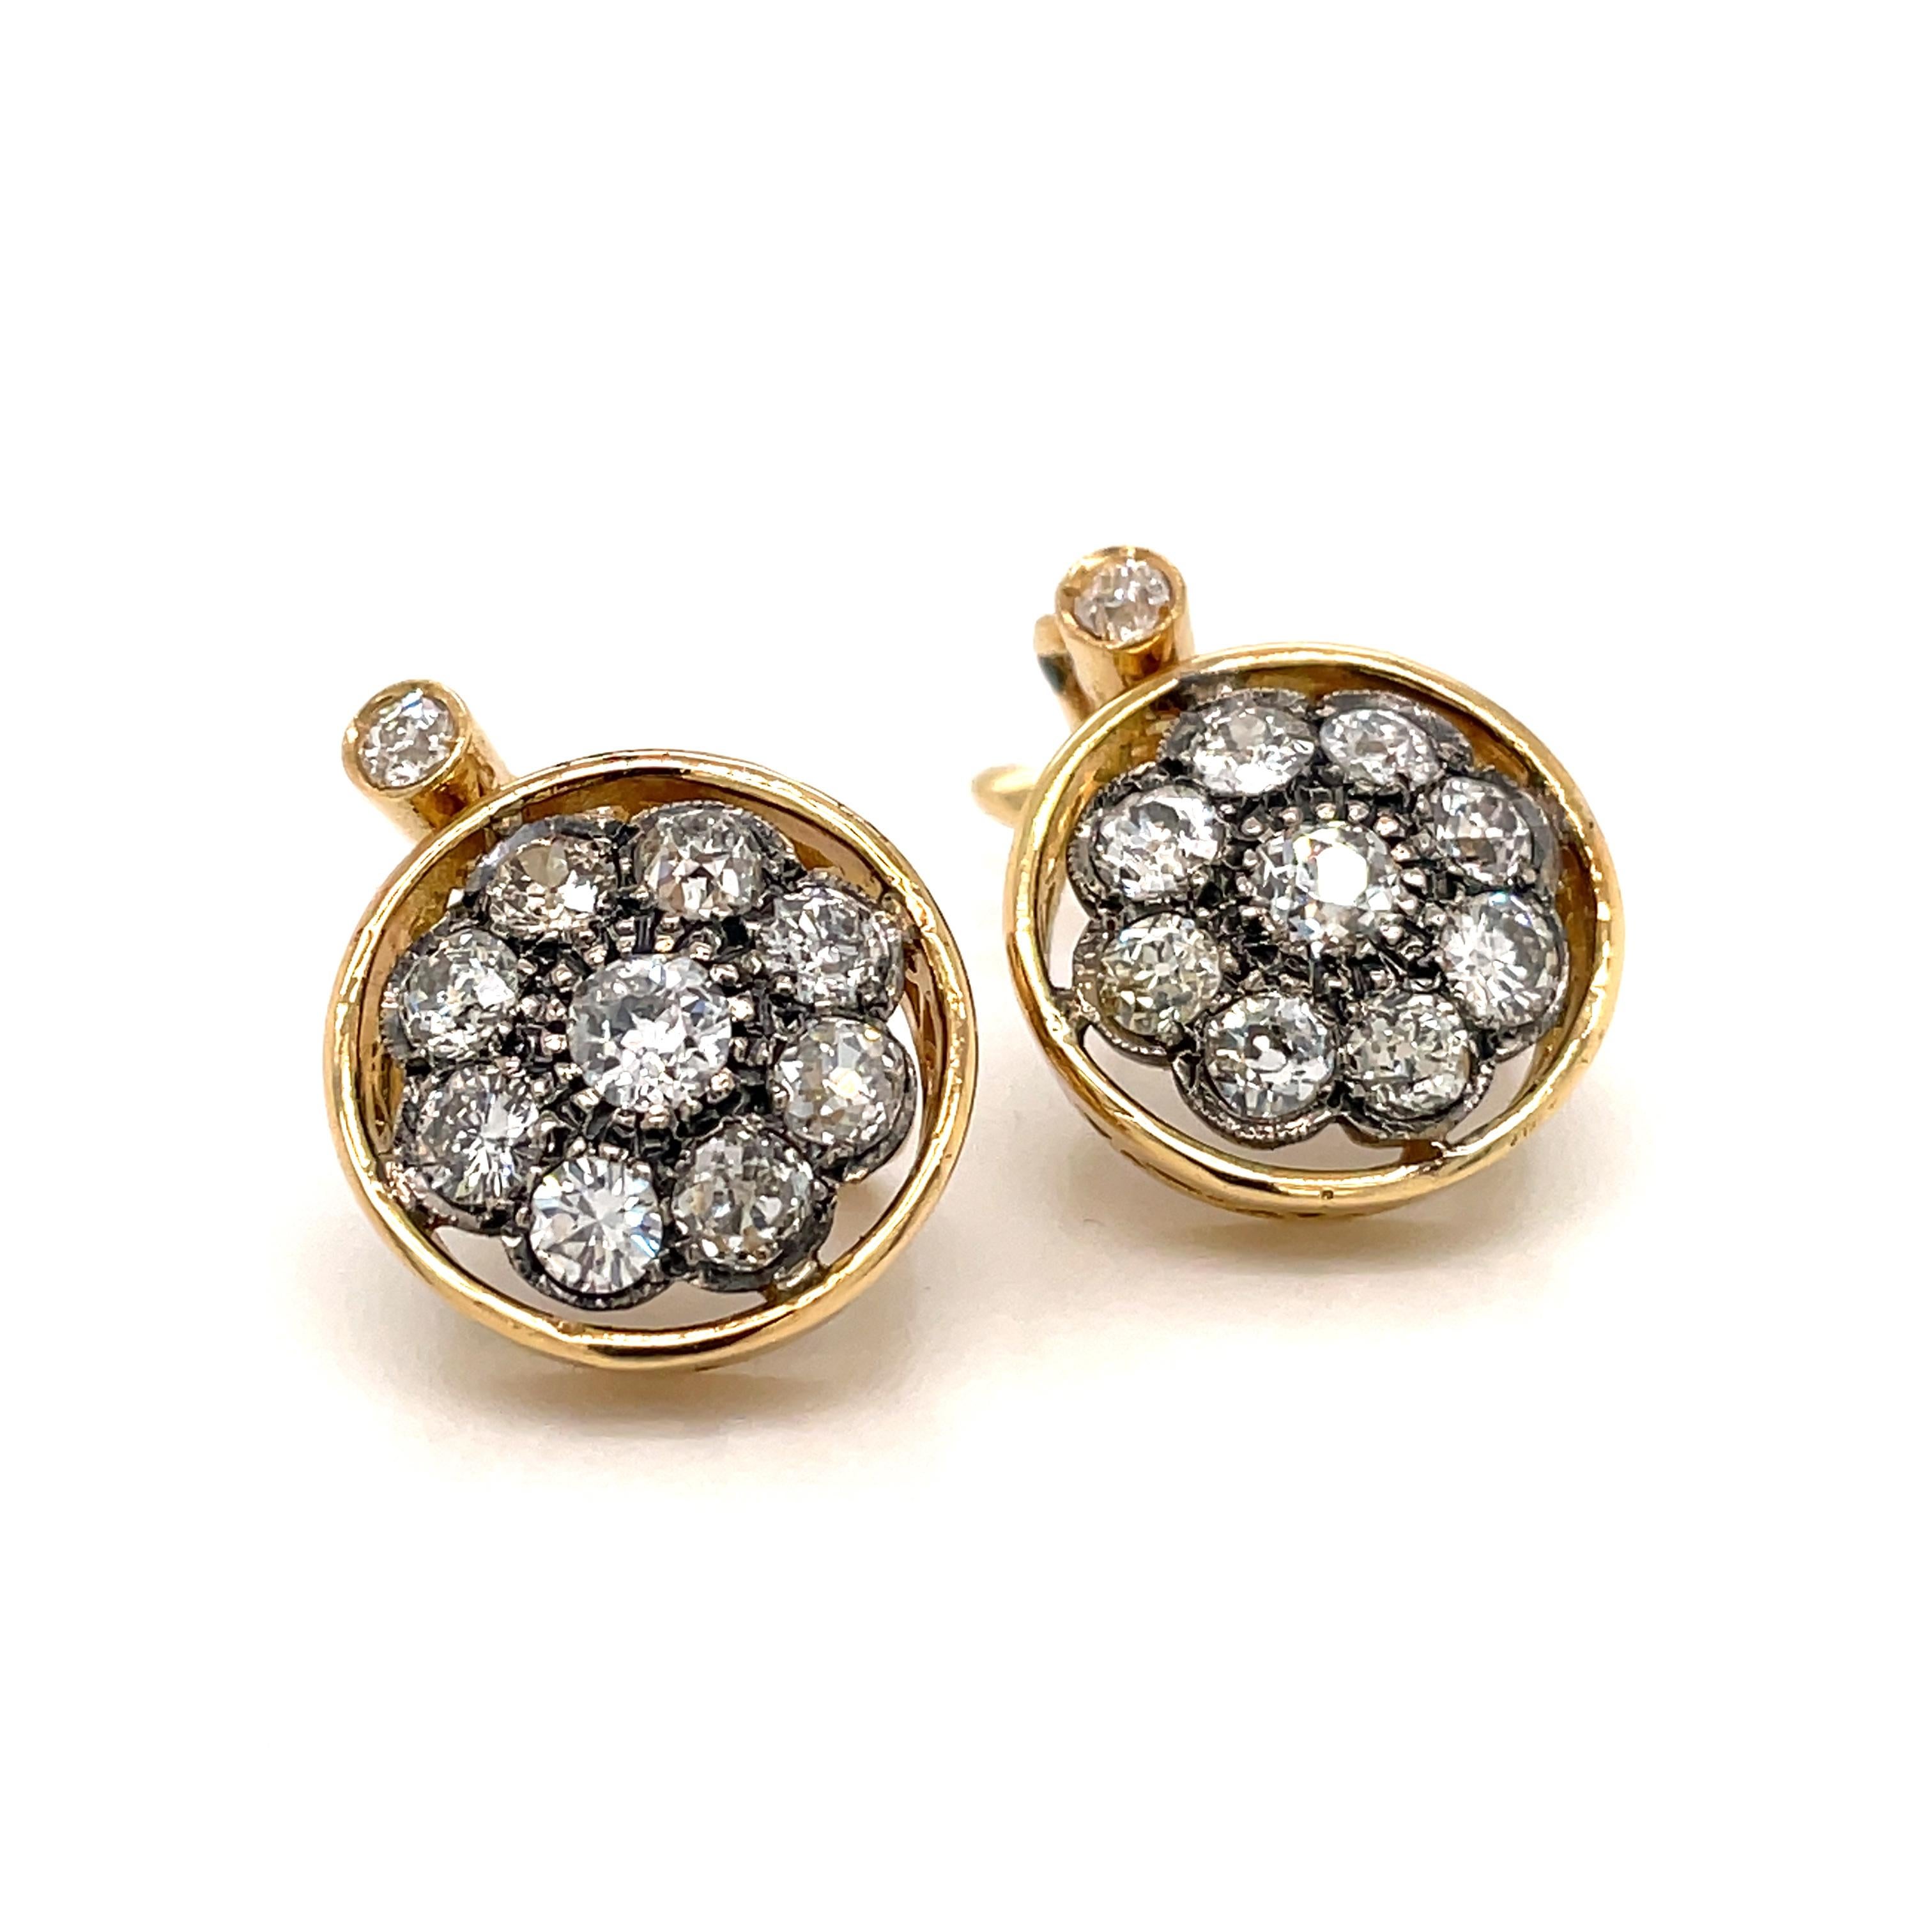 1900 earrings